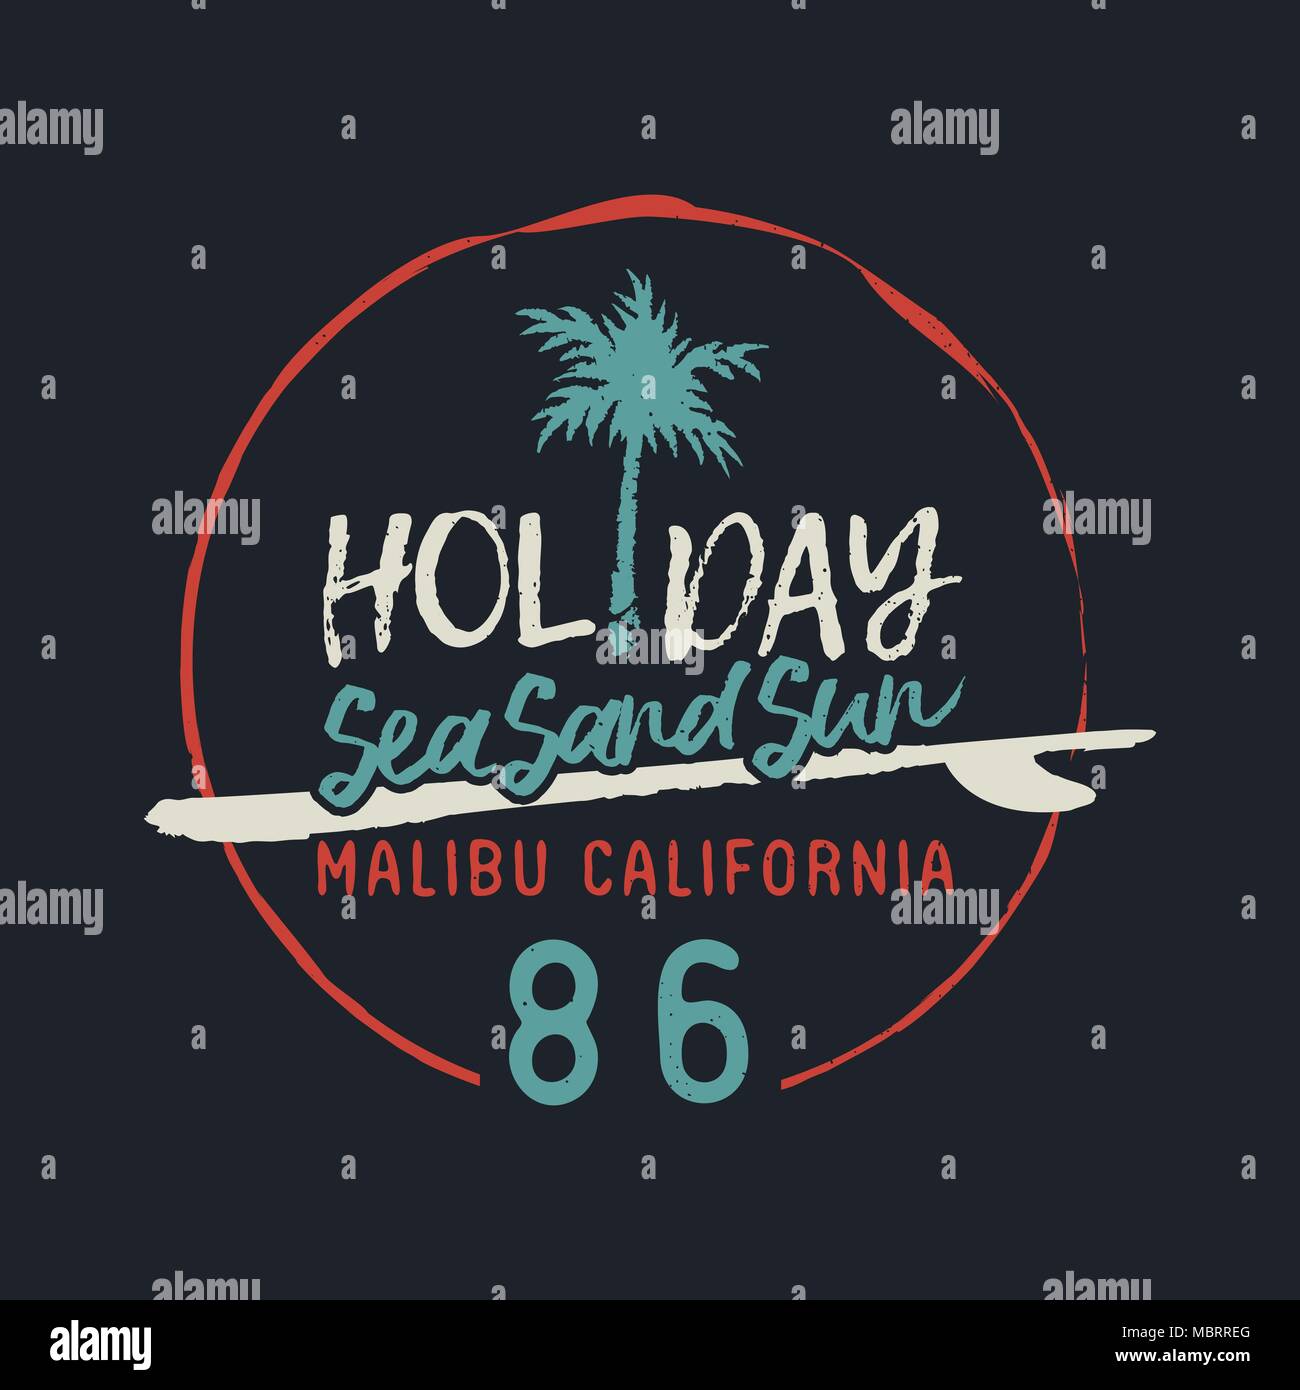 Surf à Malibu Beach typographie citer illustration. California Vintage grunge design avec palmiers et de surf dans un style dessiné à la main. Vecteur EPS10. Illustration de Vecteur